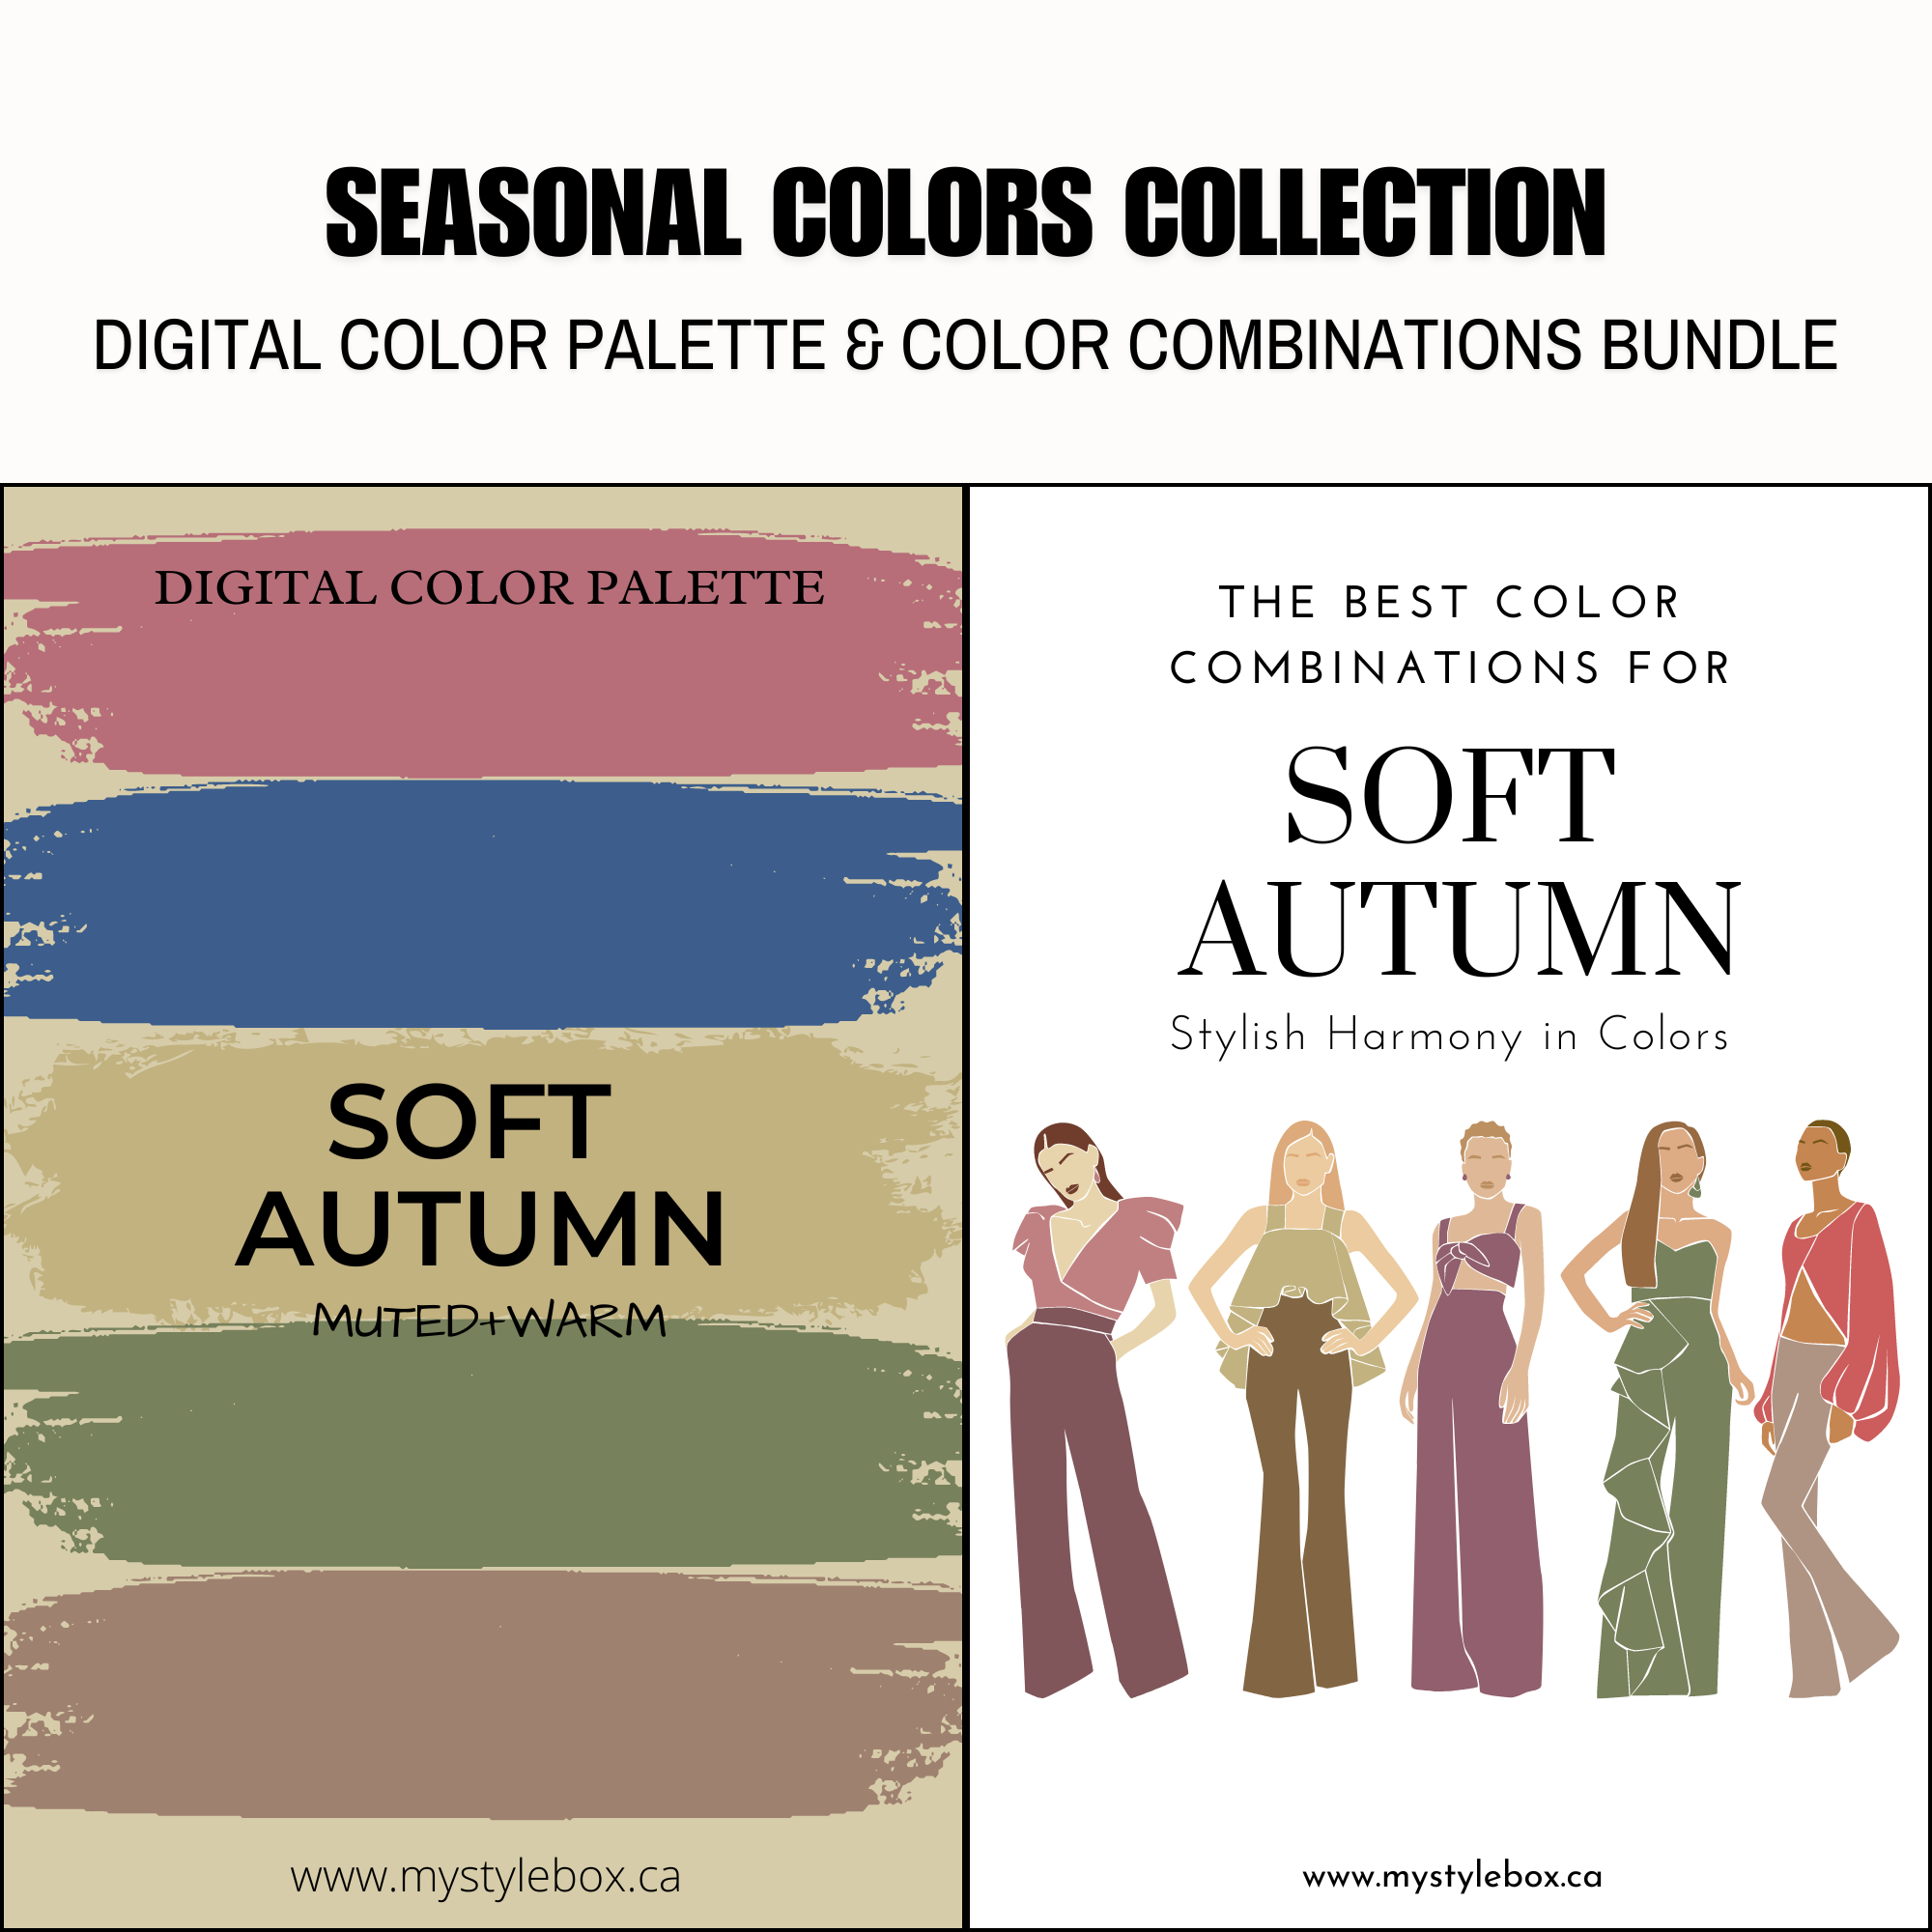 Paquete de paleta de colores digitales y combinaciones de colores suaves de la temporada de otoño